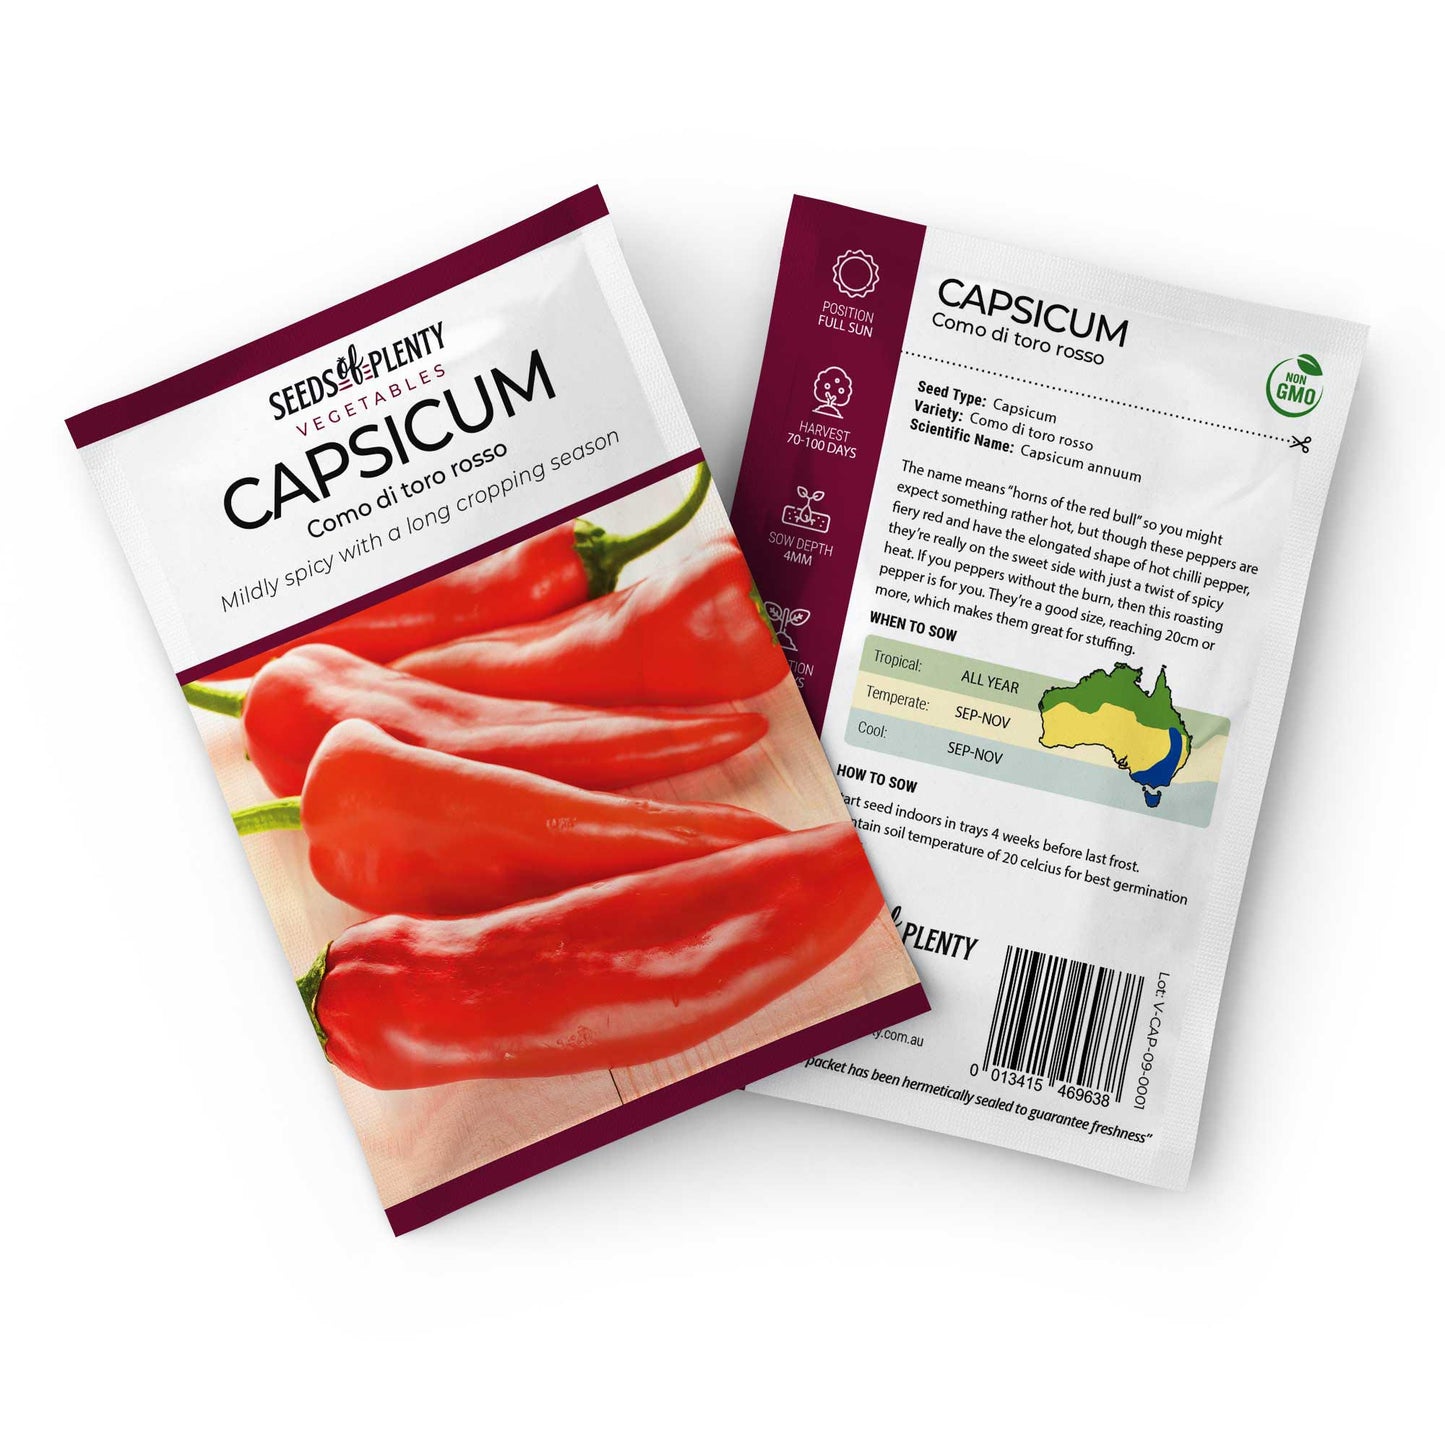 CAPSICUM - Como di toro rosso Default Title